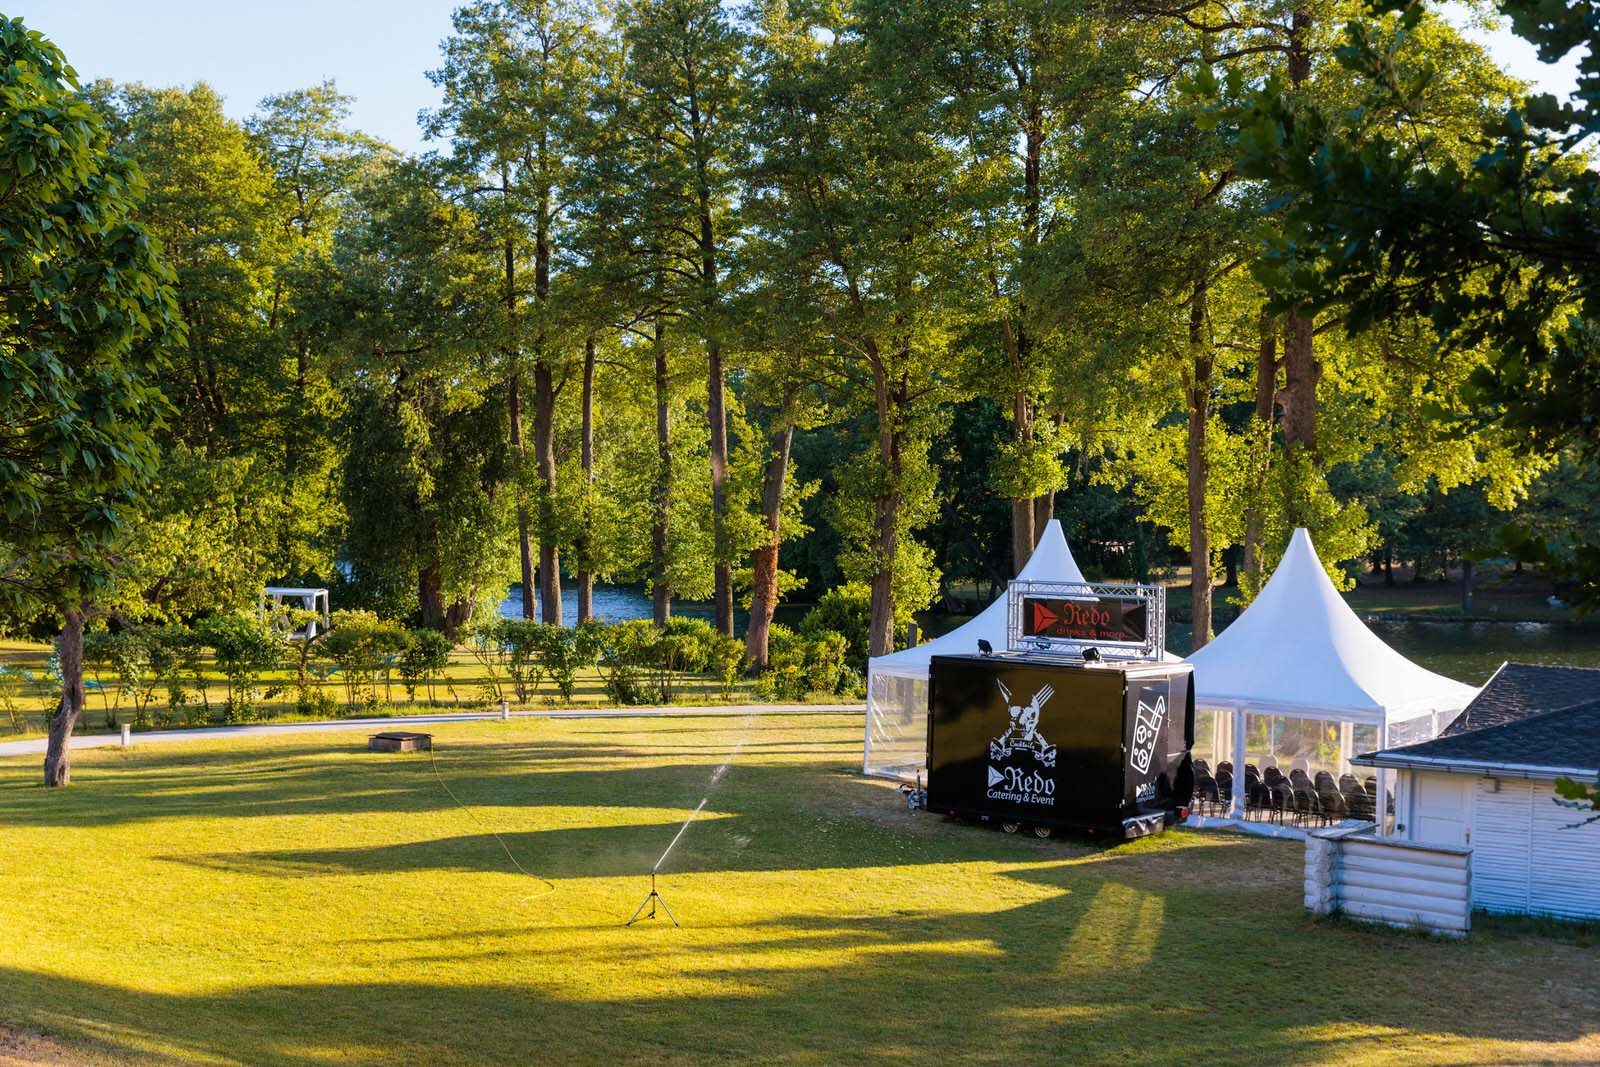 Bereitgestellte Outdoor-Hochzeitslocation im Residenz Seehotel mit eleganter Bühne und Zelten, umgeben von einem ruhigen Park am See, ideal für traumhafte Hochzeitsfeiern im Grünen.